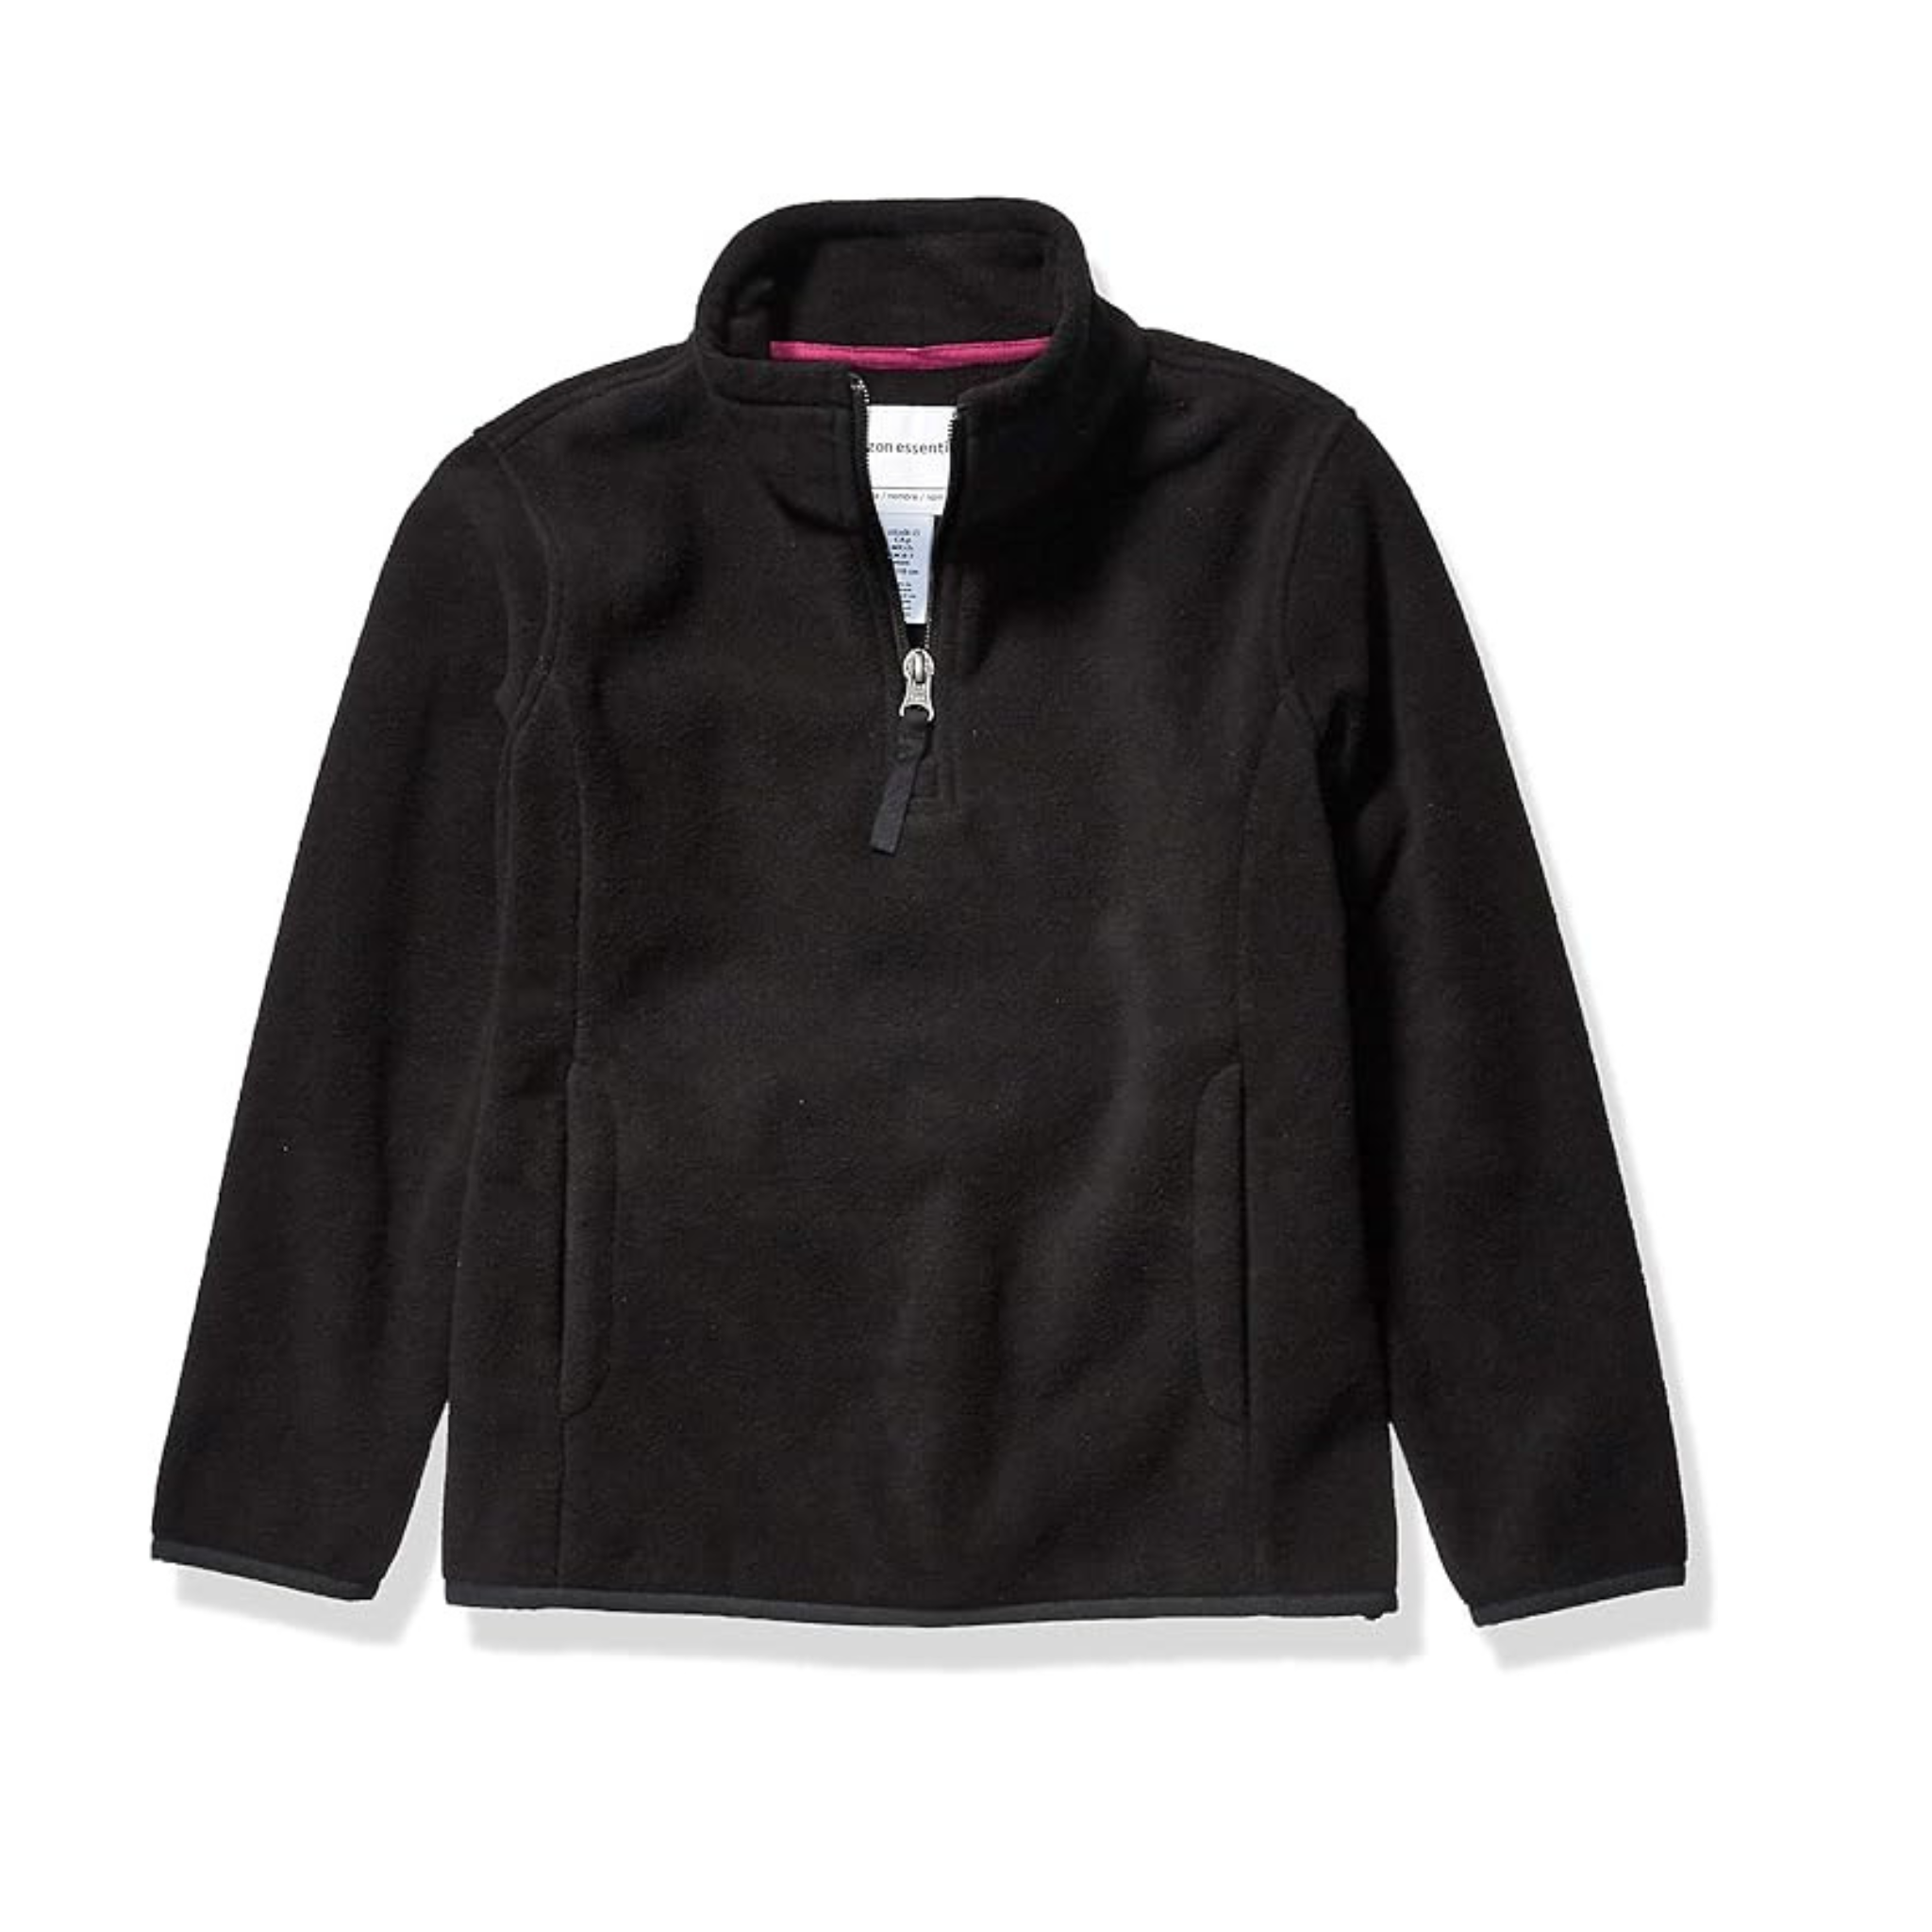 Amazon Essentials Girls and Toddlers’ Quarter-Zip Polar Fleece Jacket